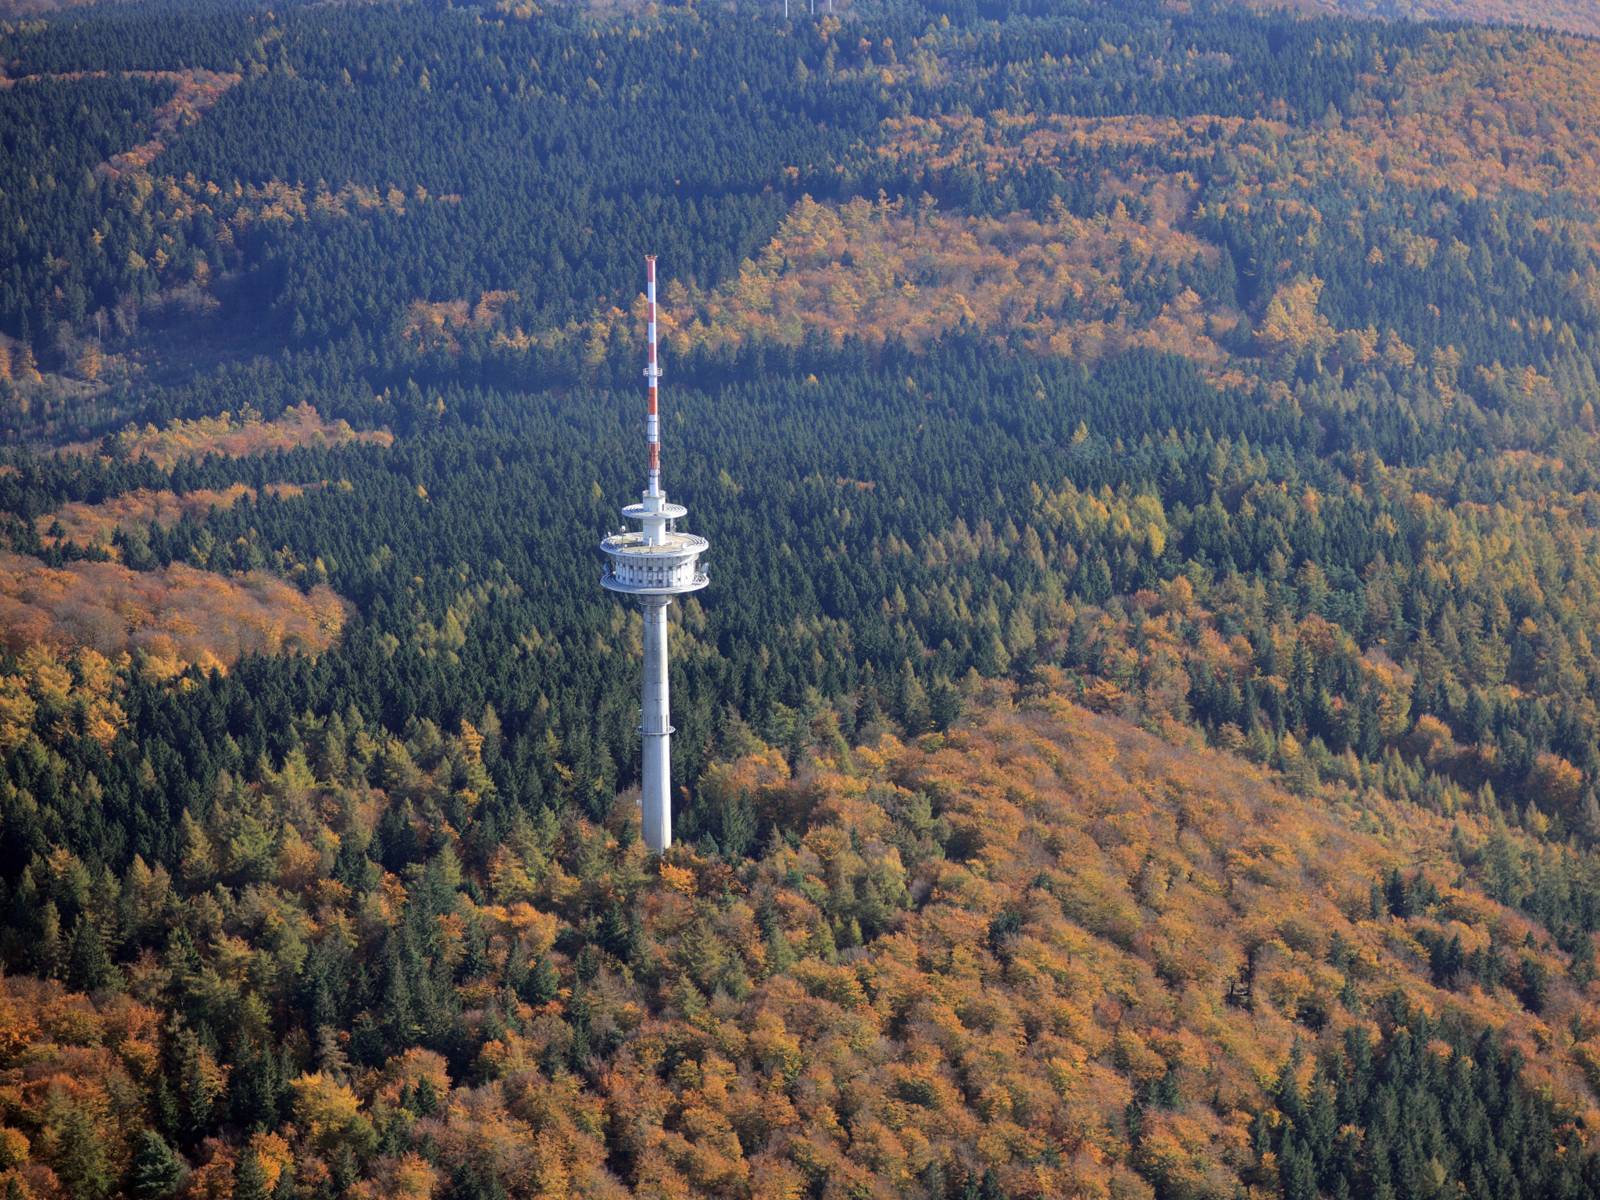 Luftbild eines Höhenzuges mit einem Laub-/Nadelwald im Herbst und einem Funkturm